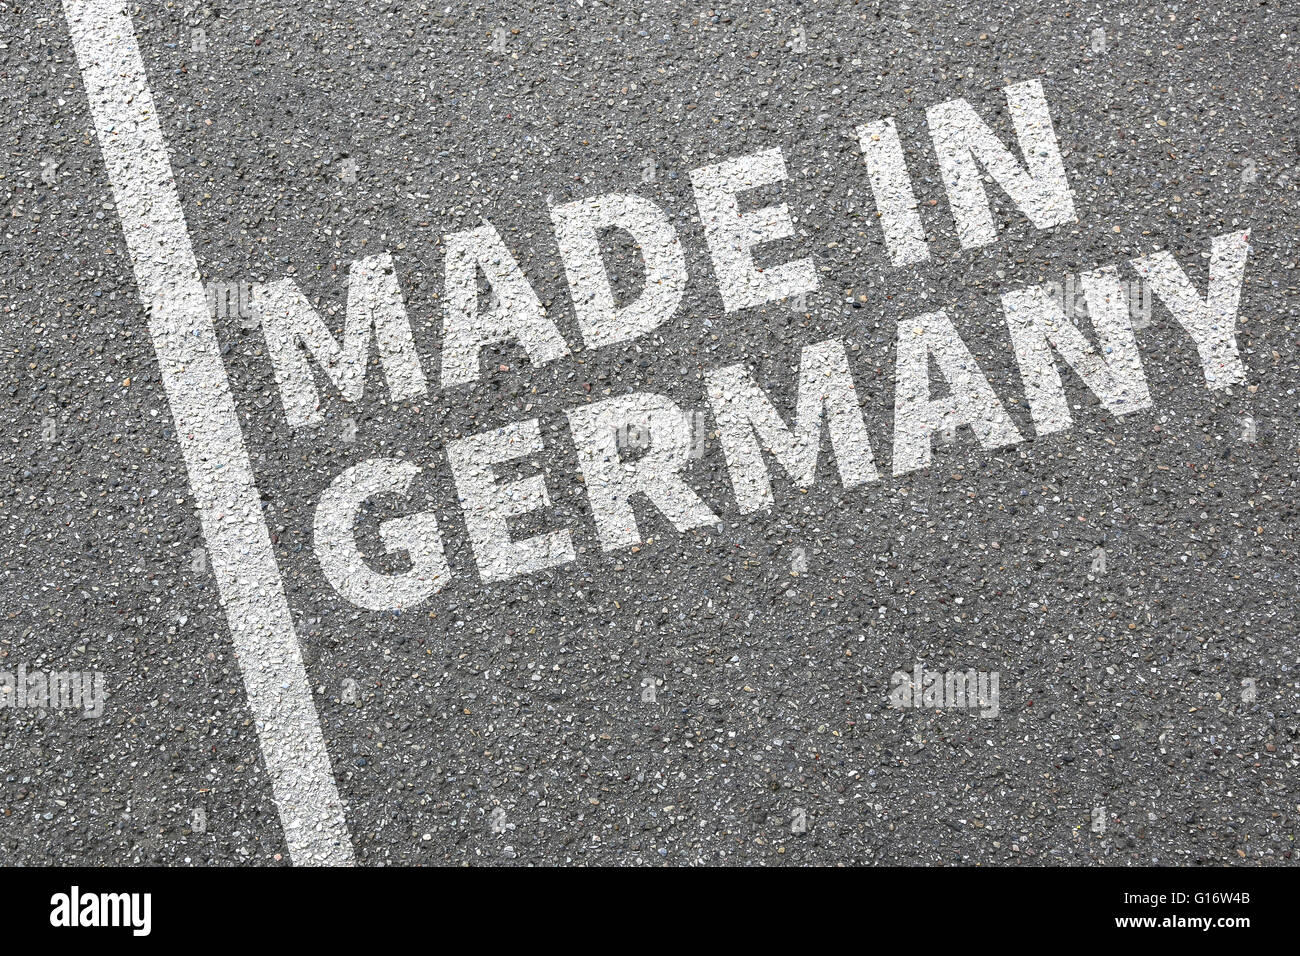 La qualité des produits Made in Germany ENTREPRISE concept marketing Banque D'Images